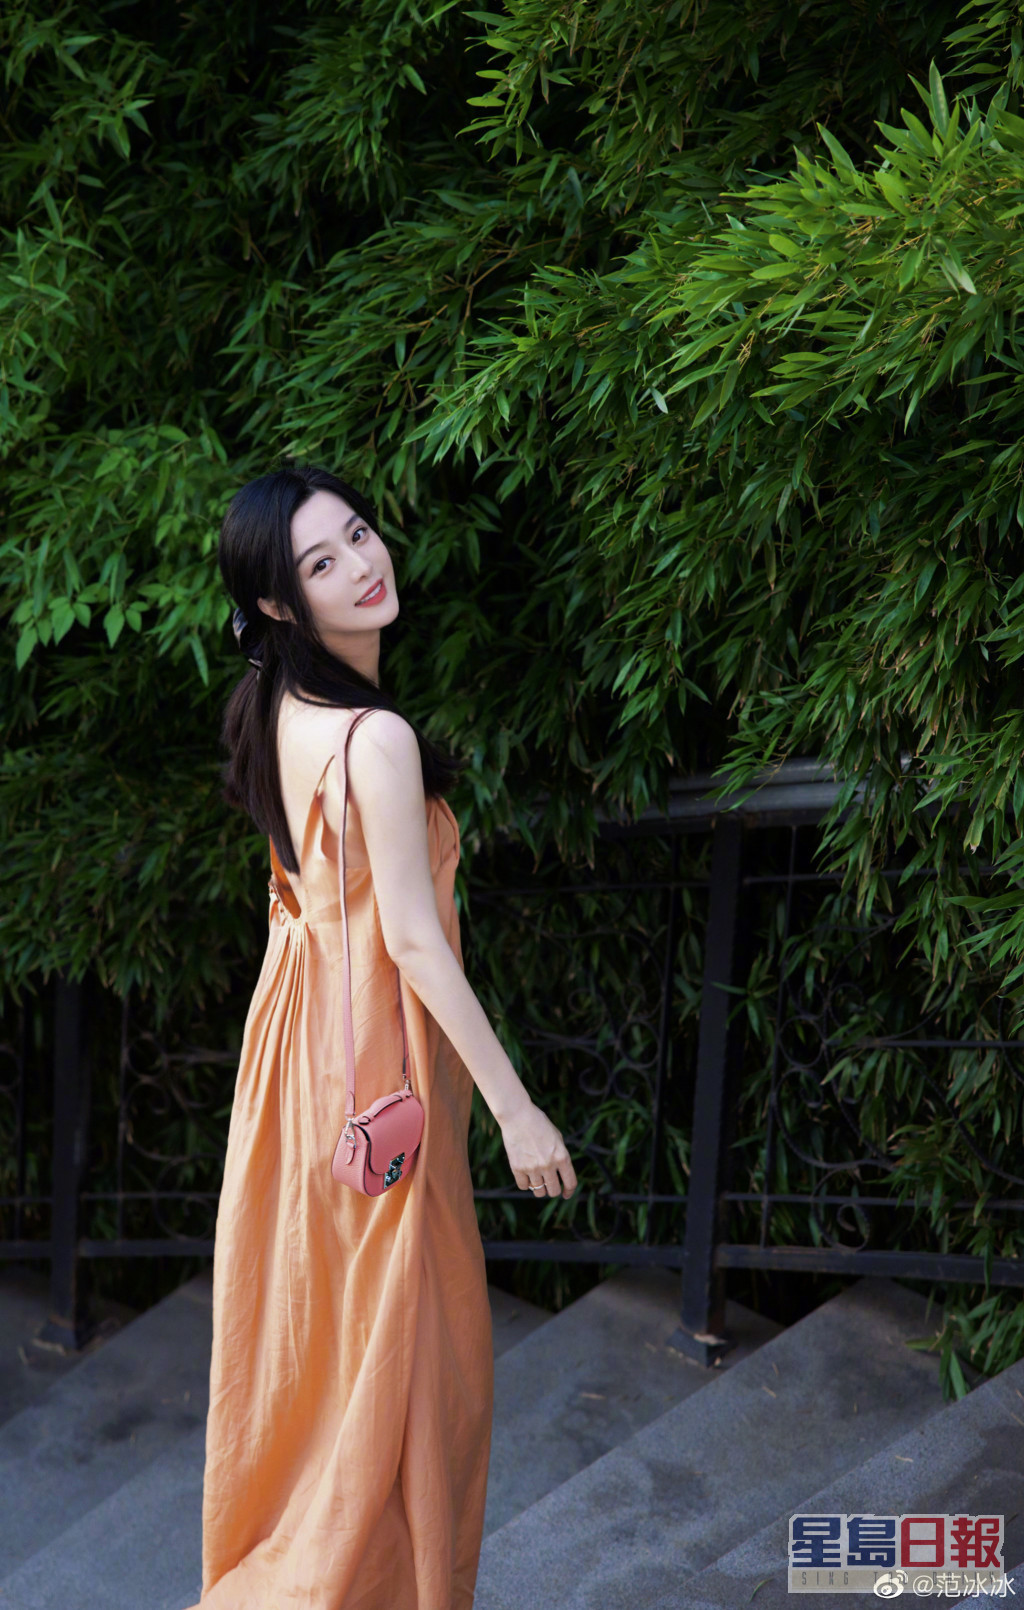 年中都有post过夏日look，橙色吊带连身裙，飘少女味。